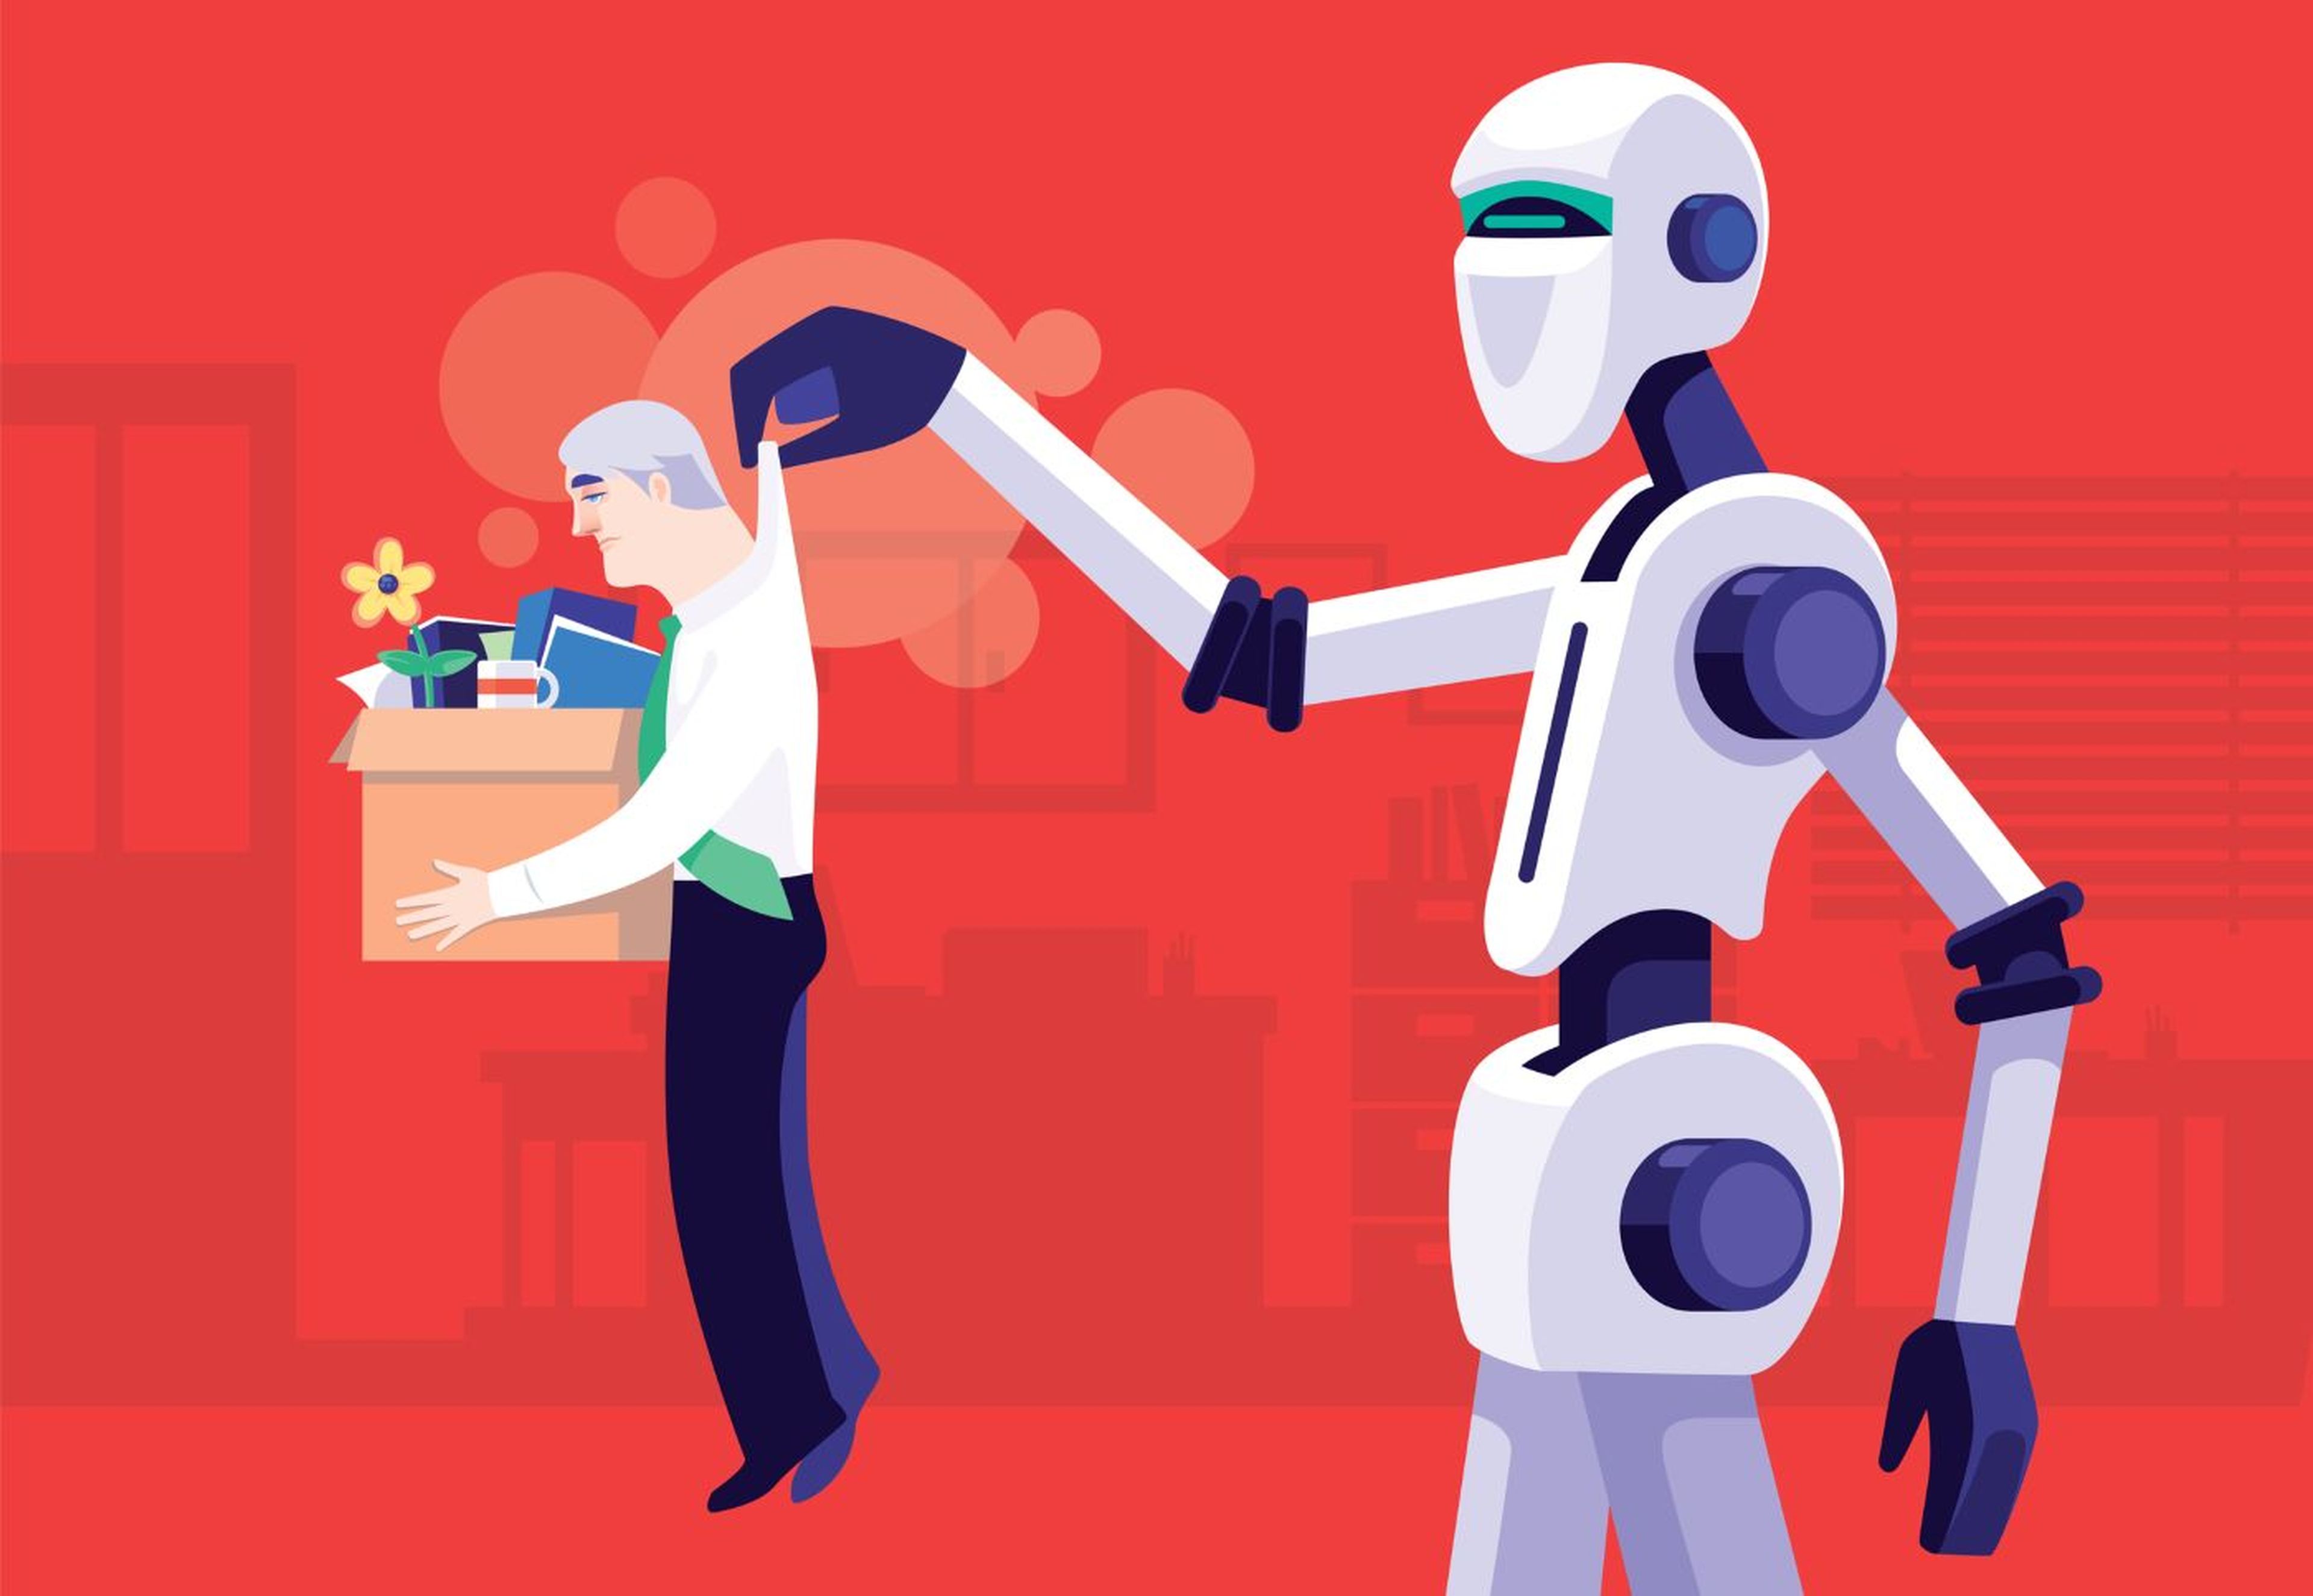 IA destruye empleo, robot despide a trabajador